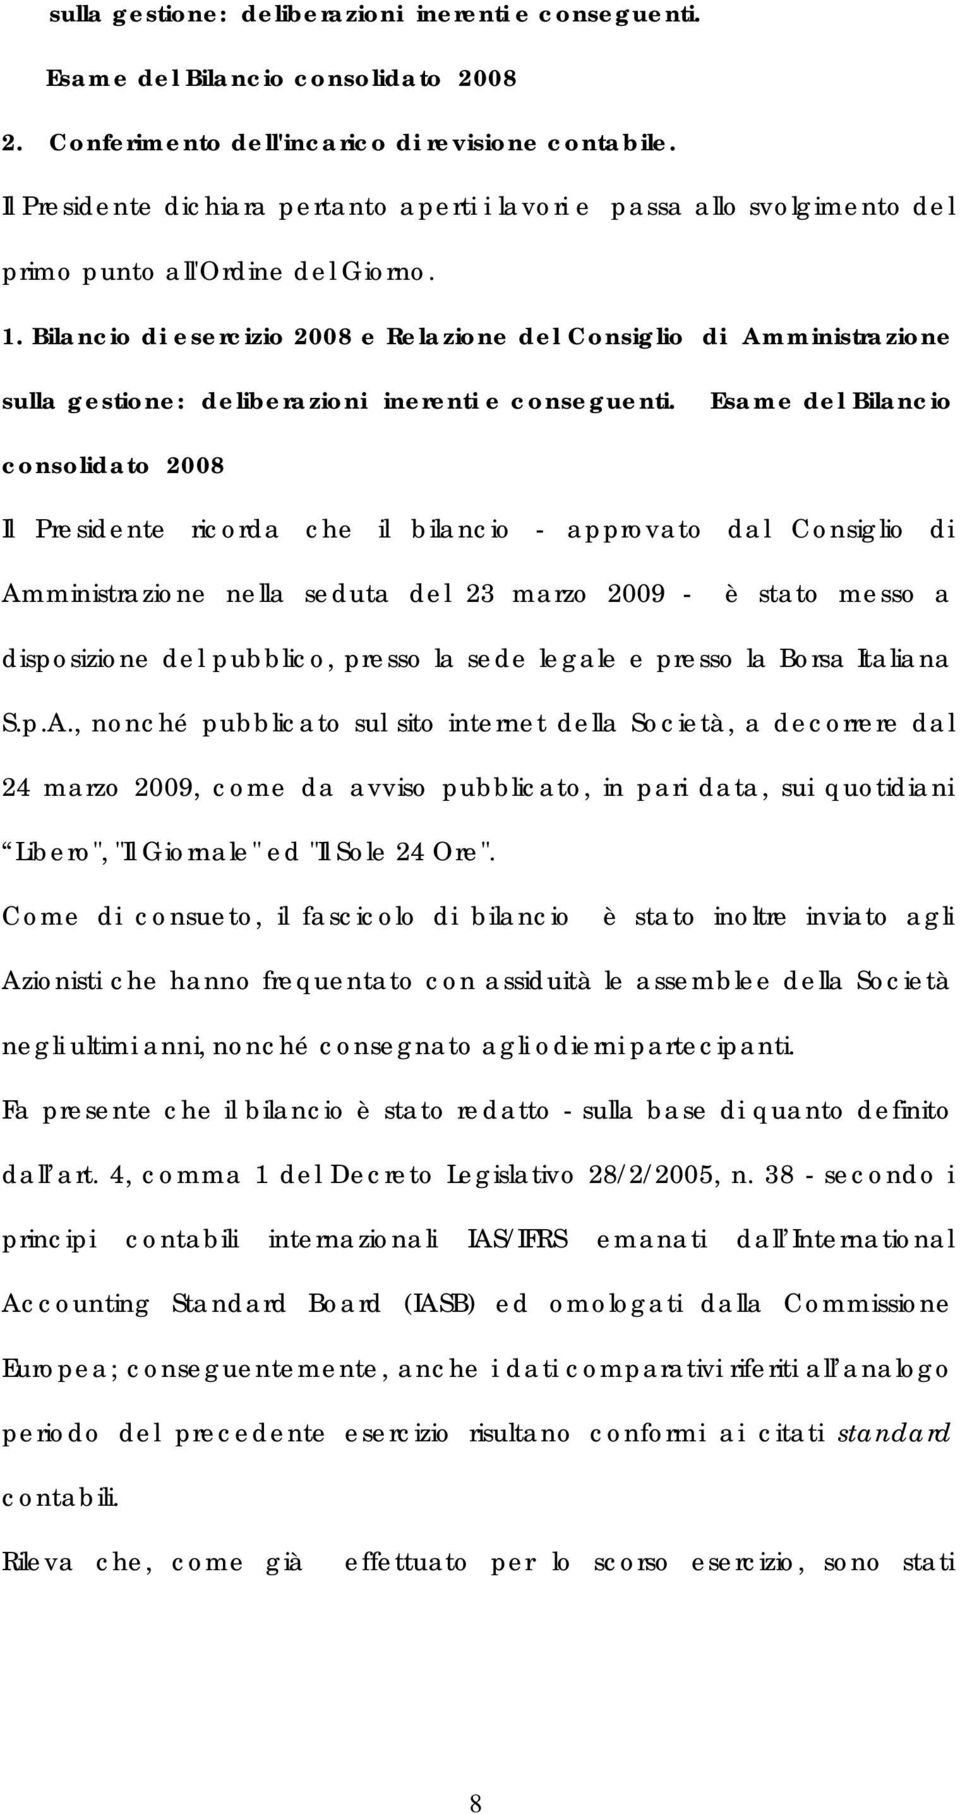 Bilancio di esercizio 2008 e Relazione del Consiglio di Amministrazione sulla gestione: deliberazioni inerenti e conseguenti.